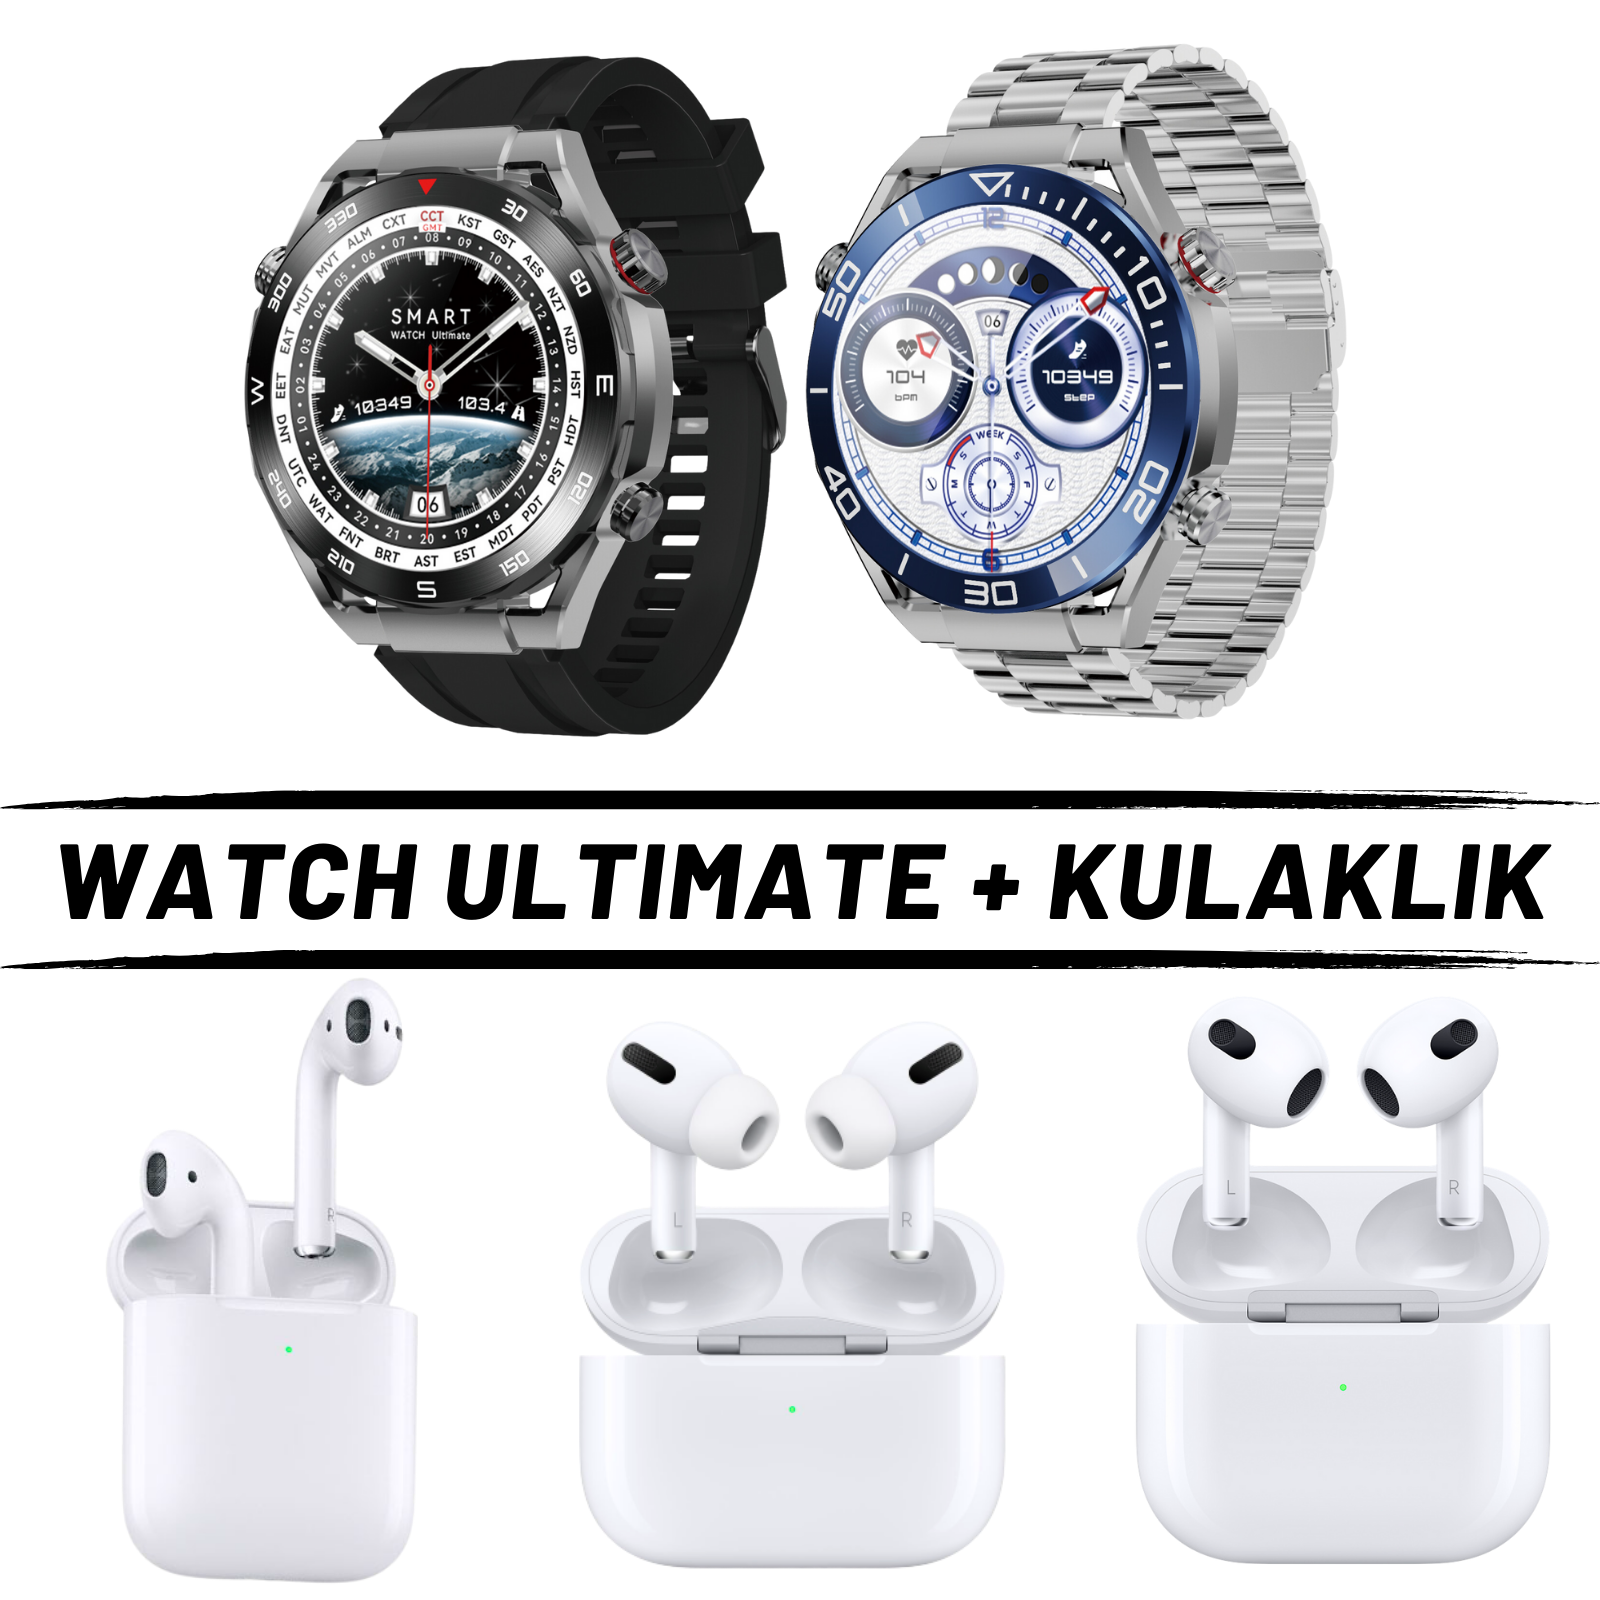 Watch G3 Ultimate Akıllı Saat + Kulaklık